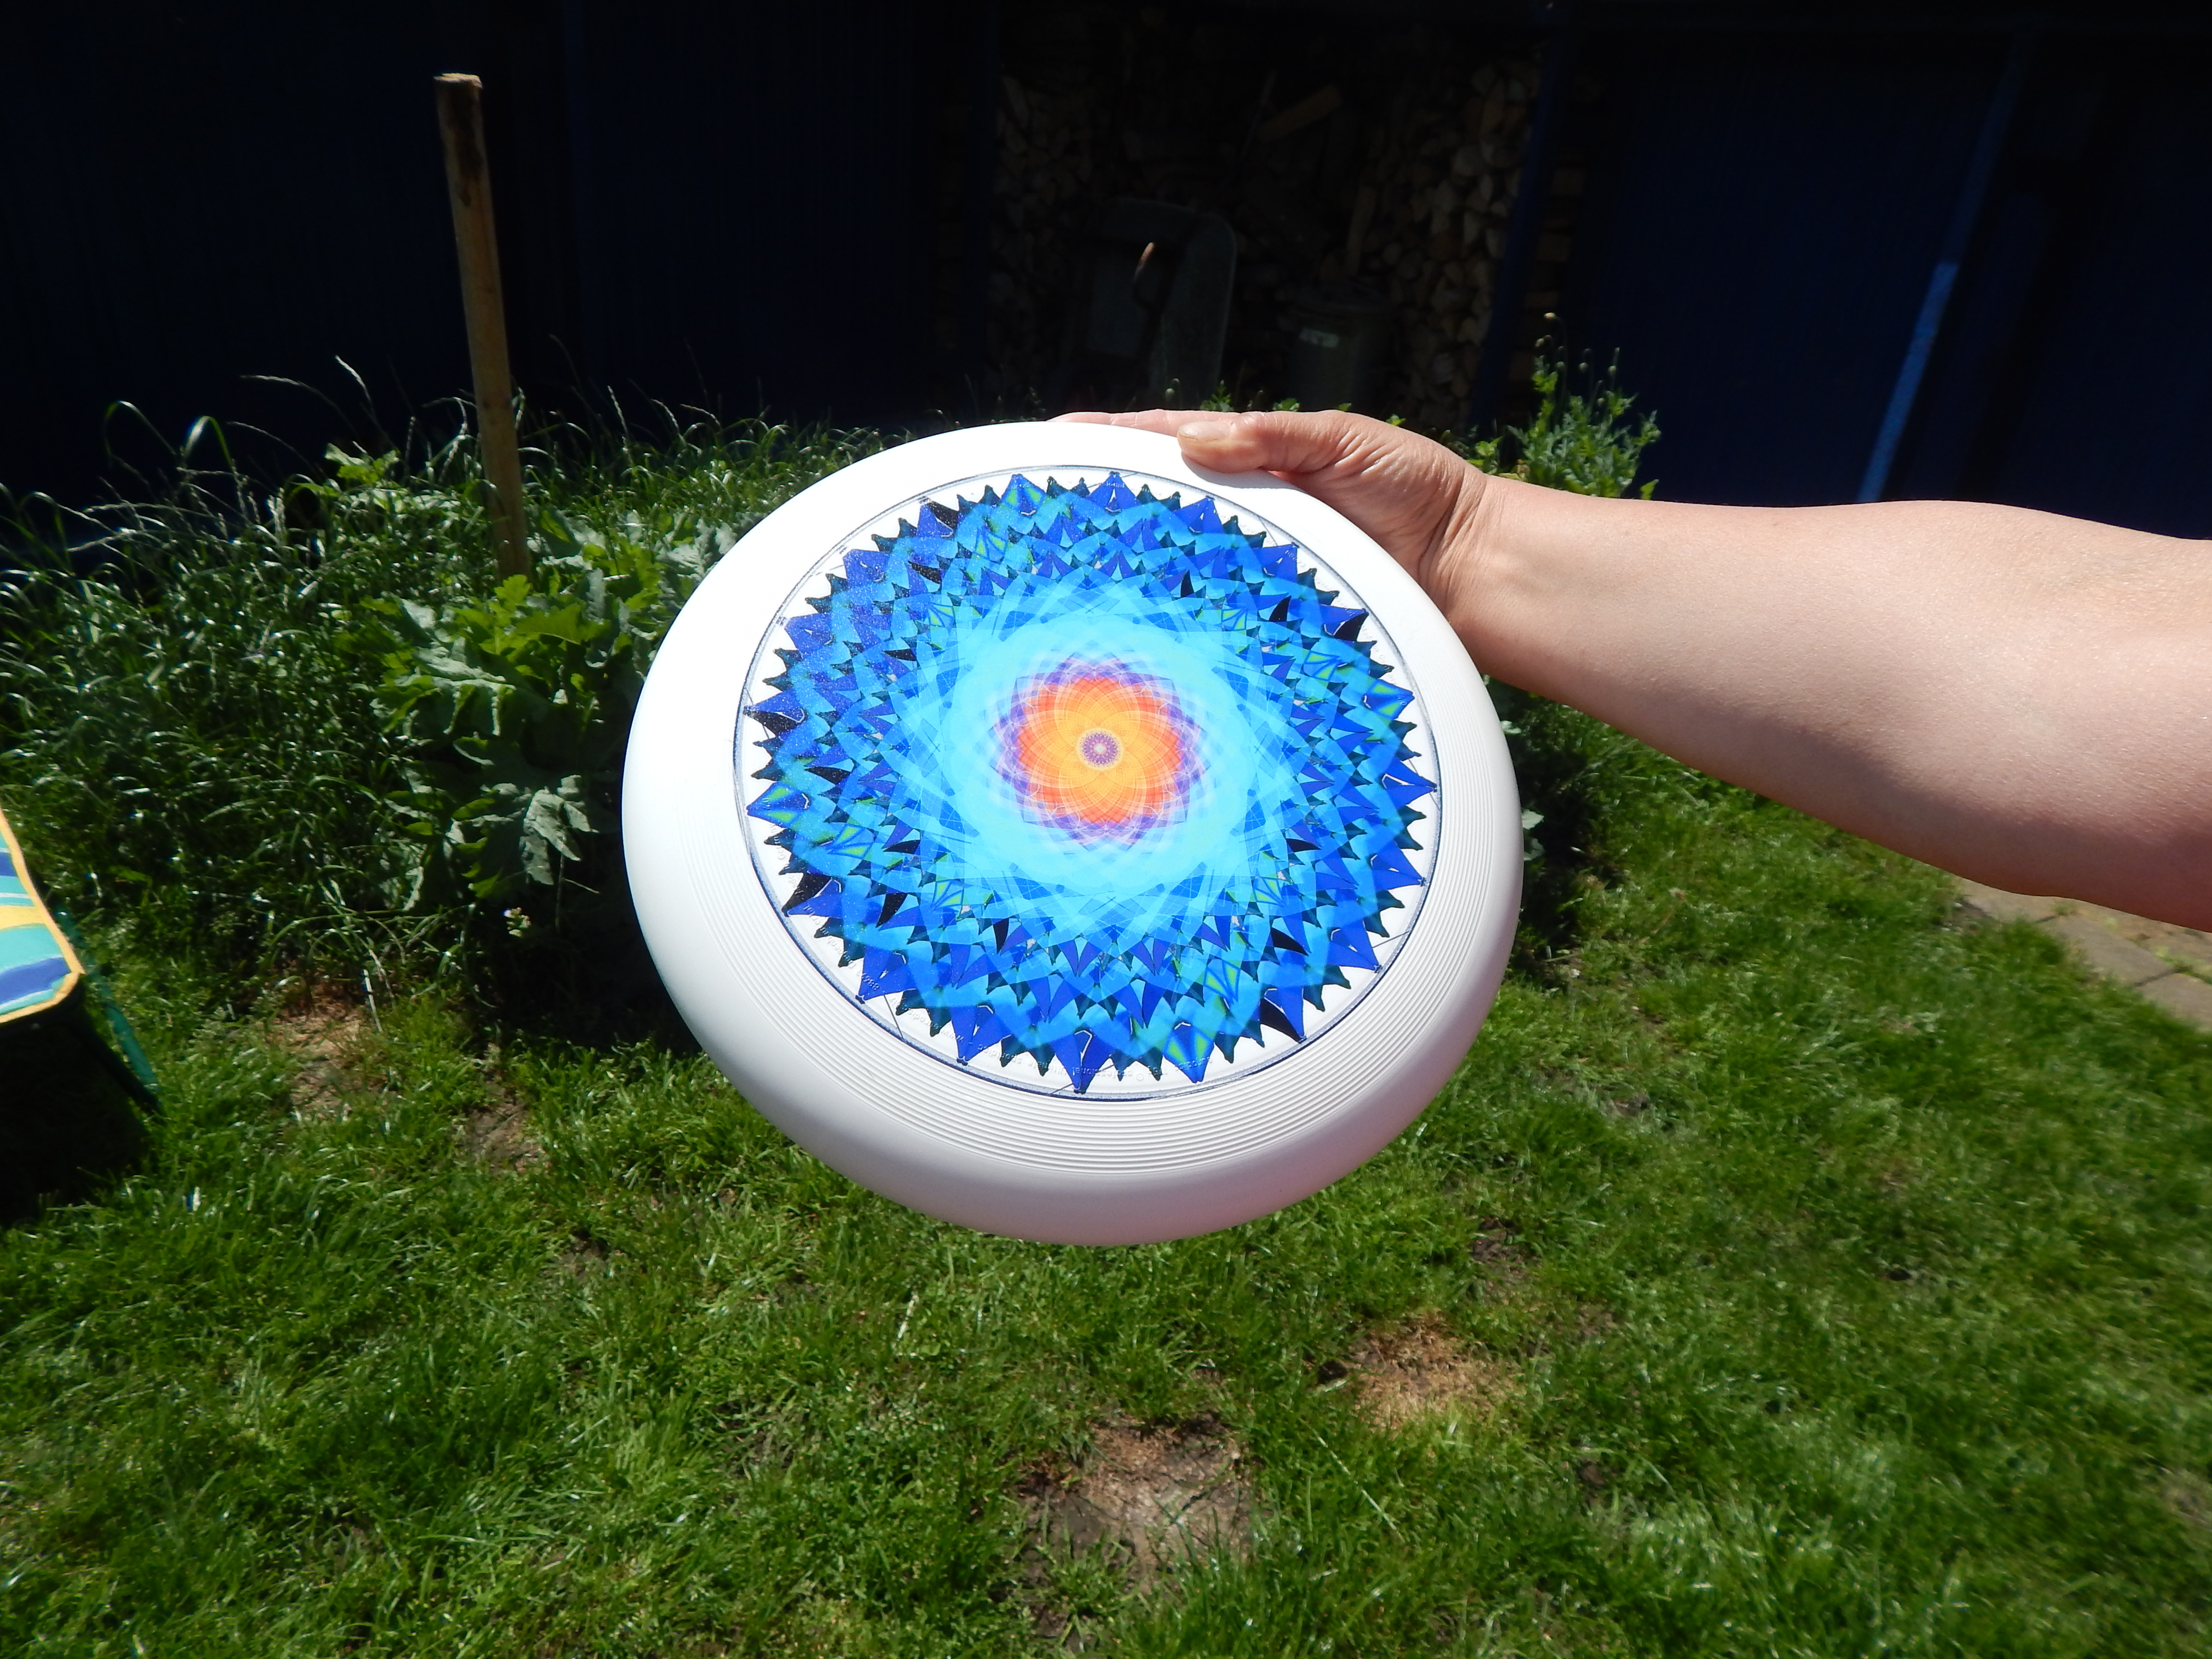 Das Mandala "die Schoepfung" auf einer Frisbee abgebildet